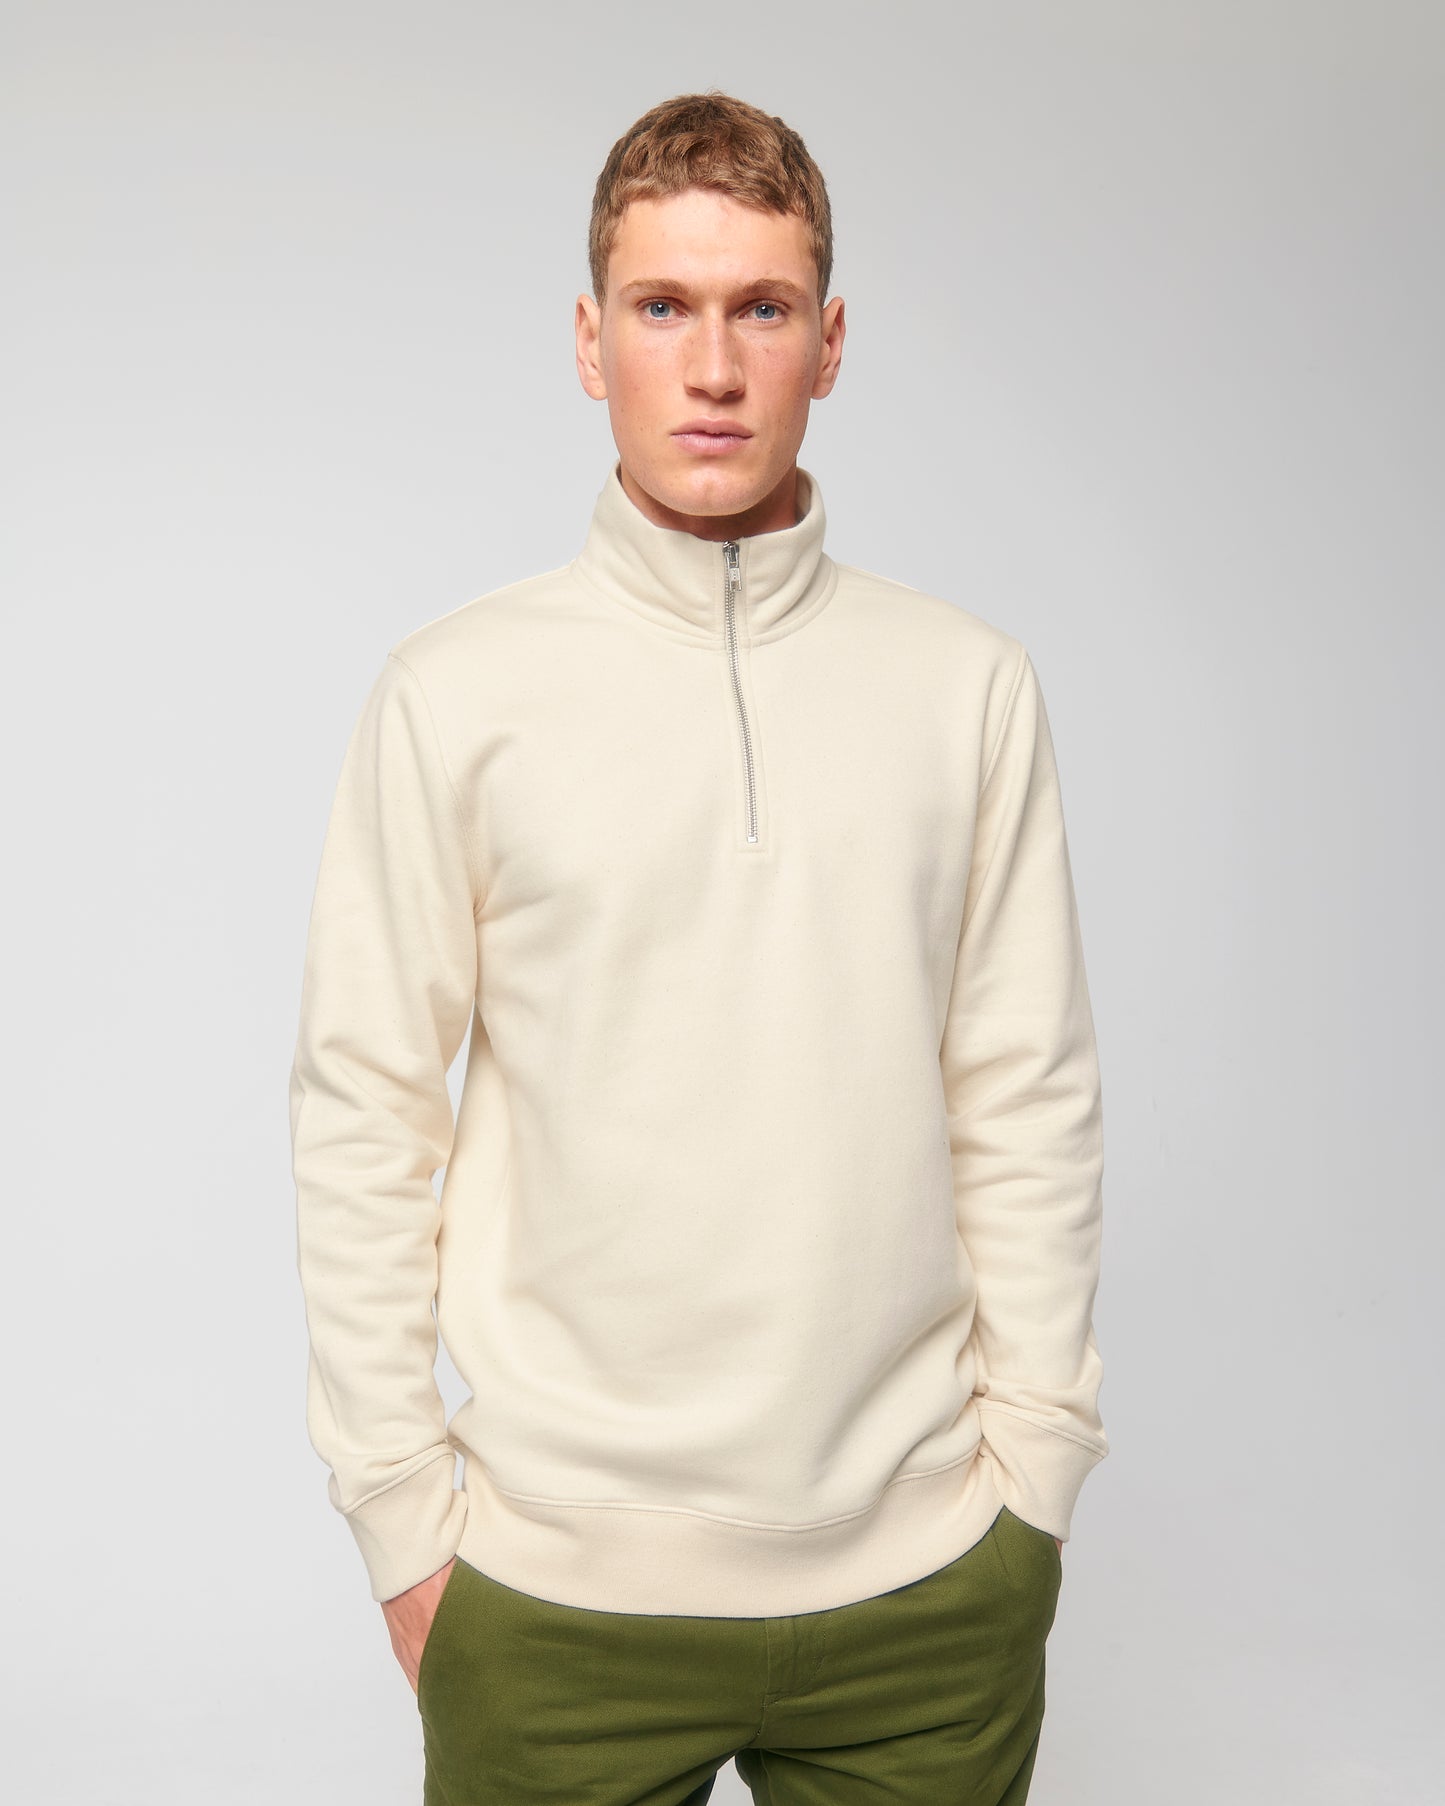 Custom quarter zip sweatshirt